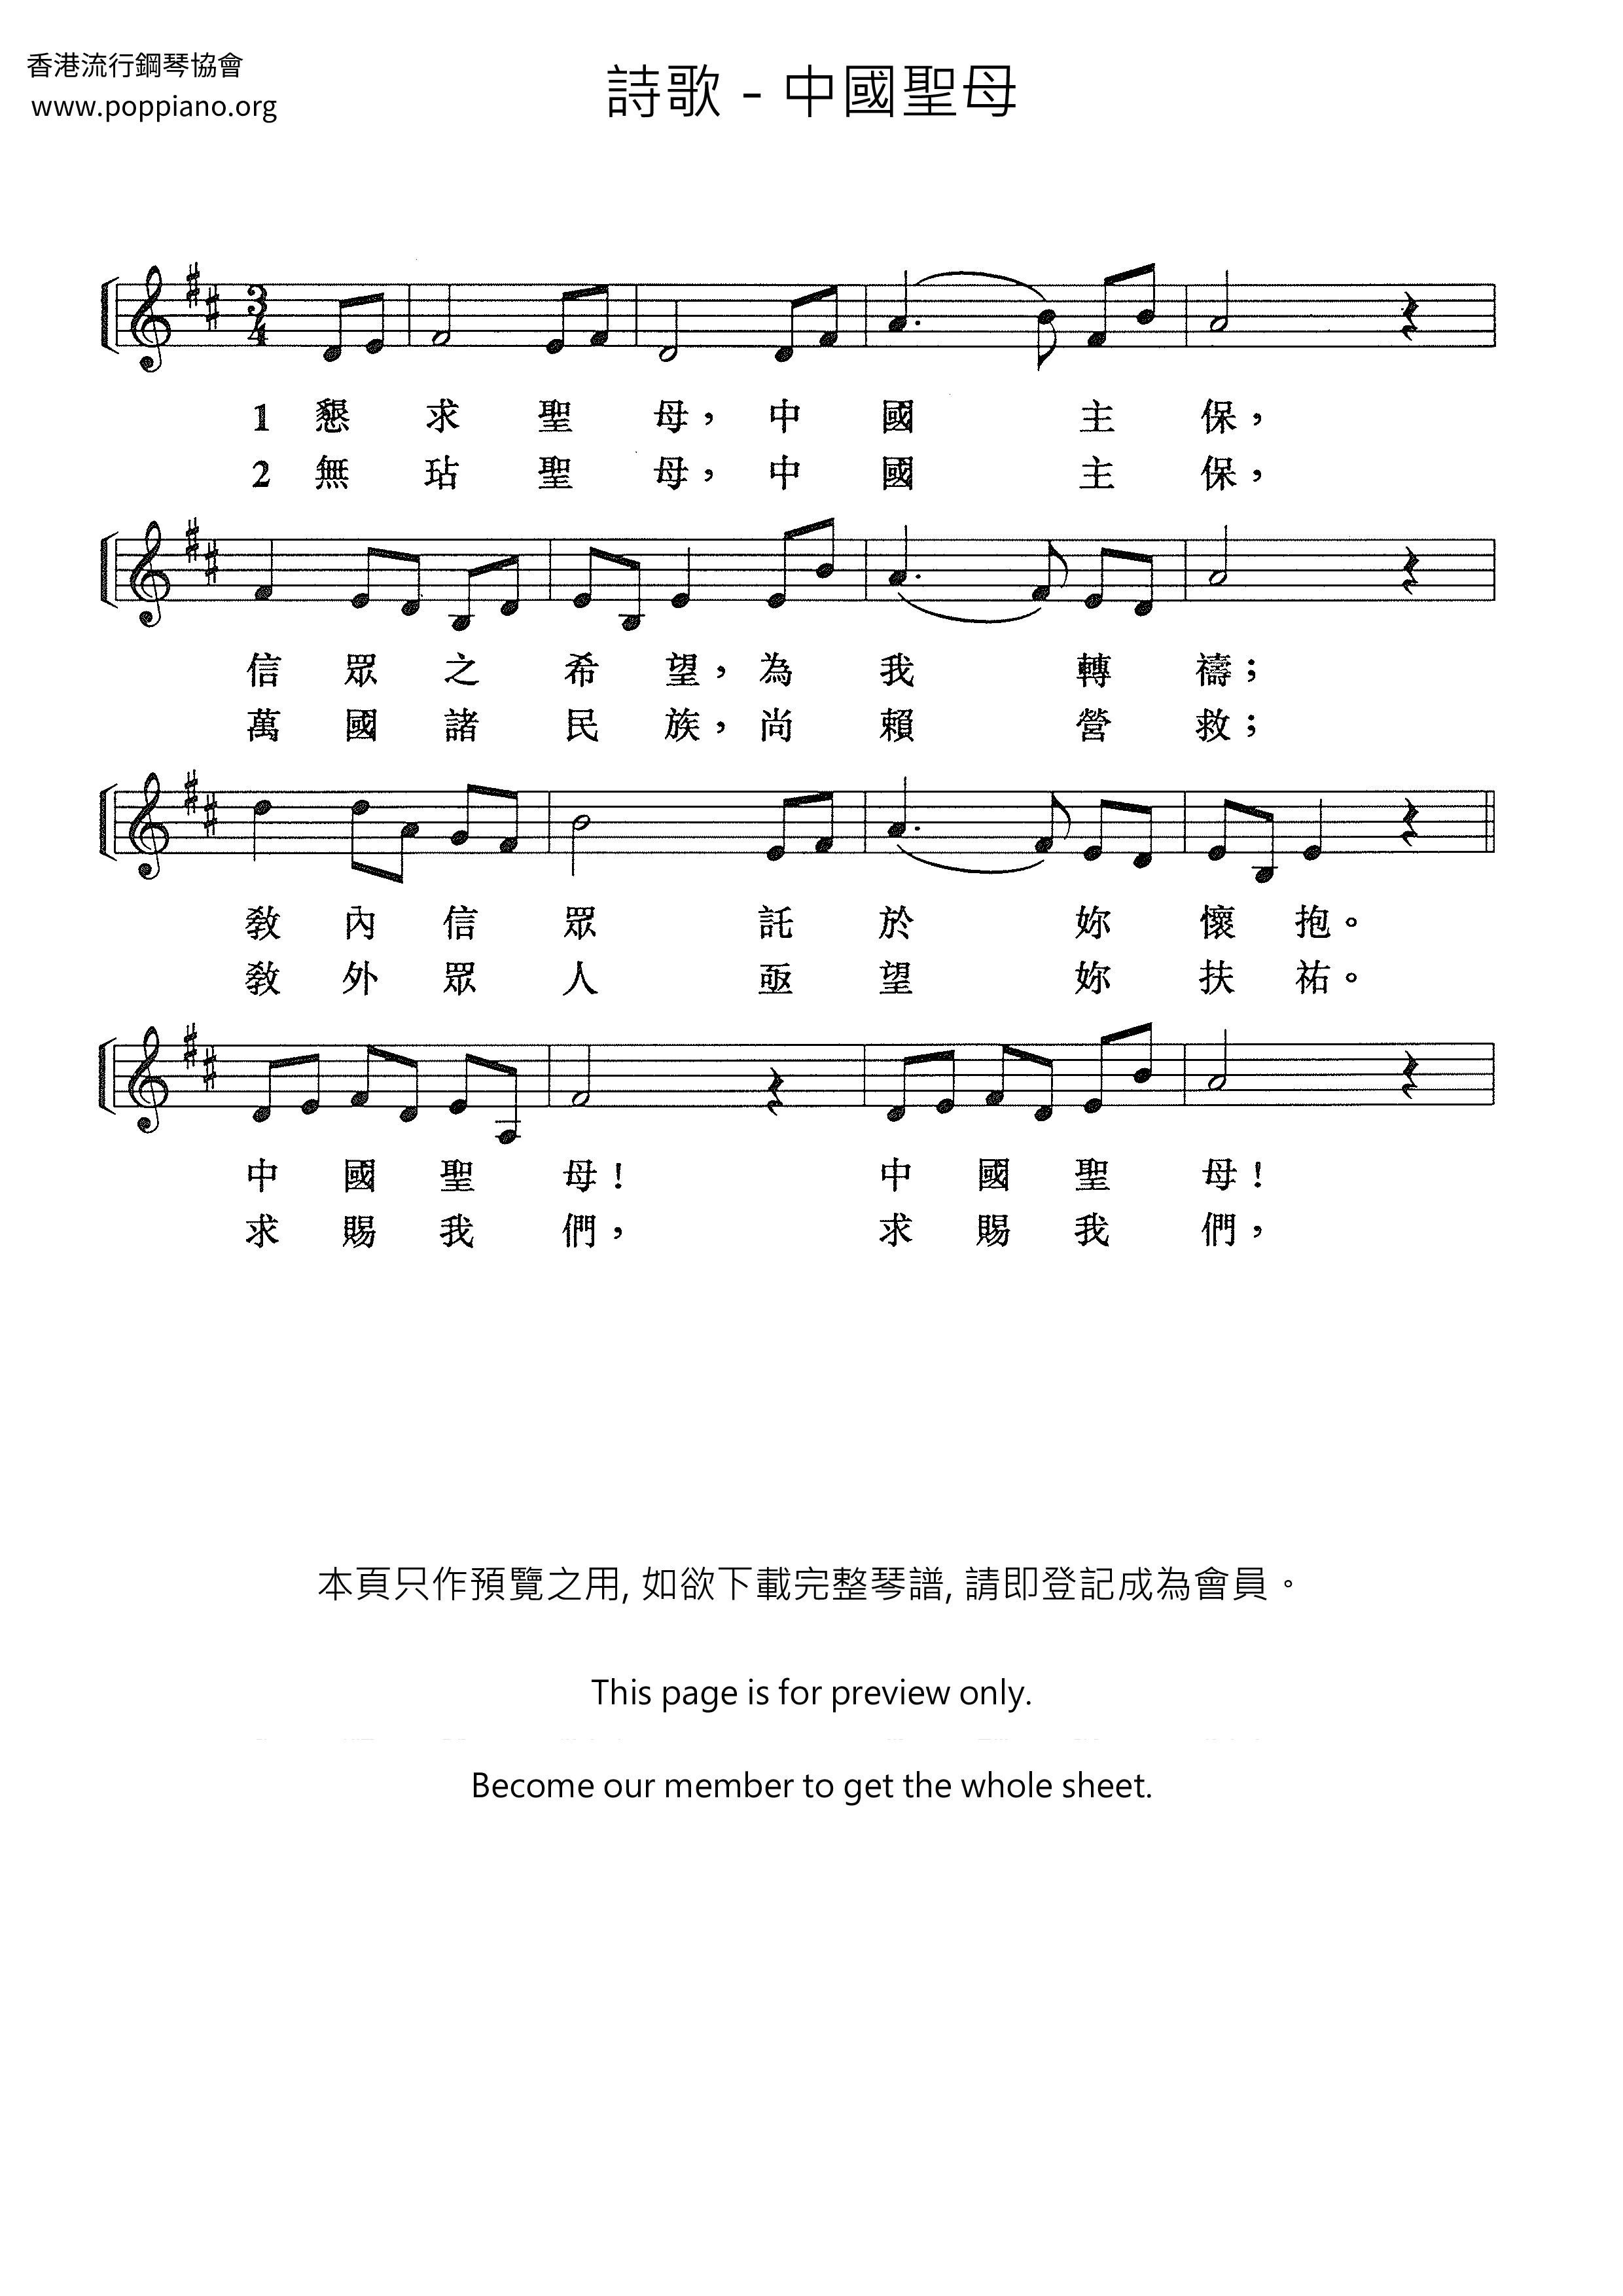 Chinese Virgin Mary Score